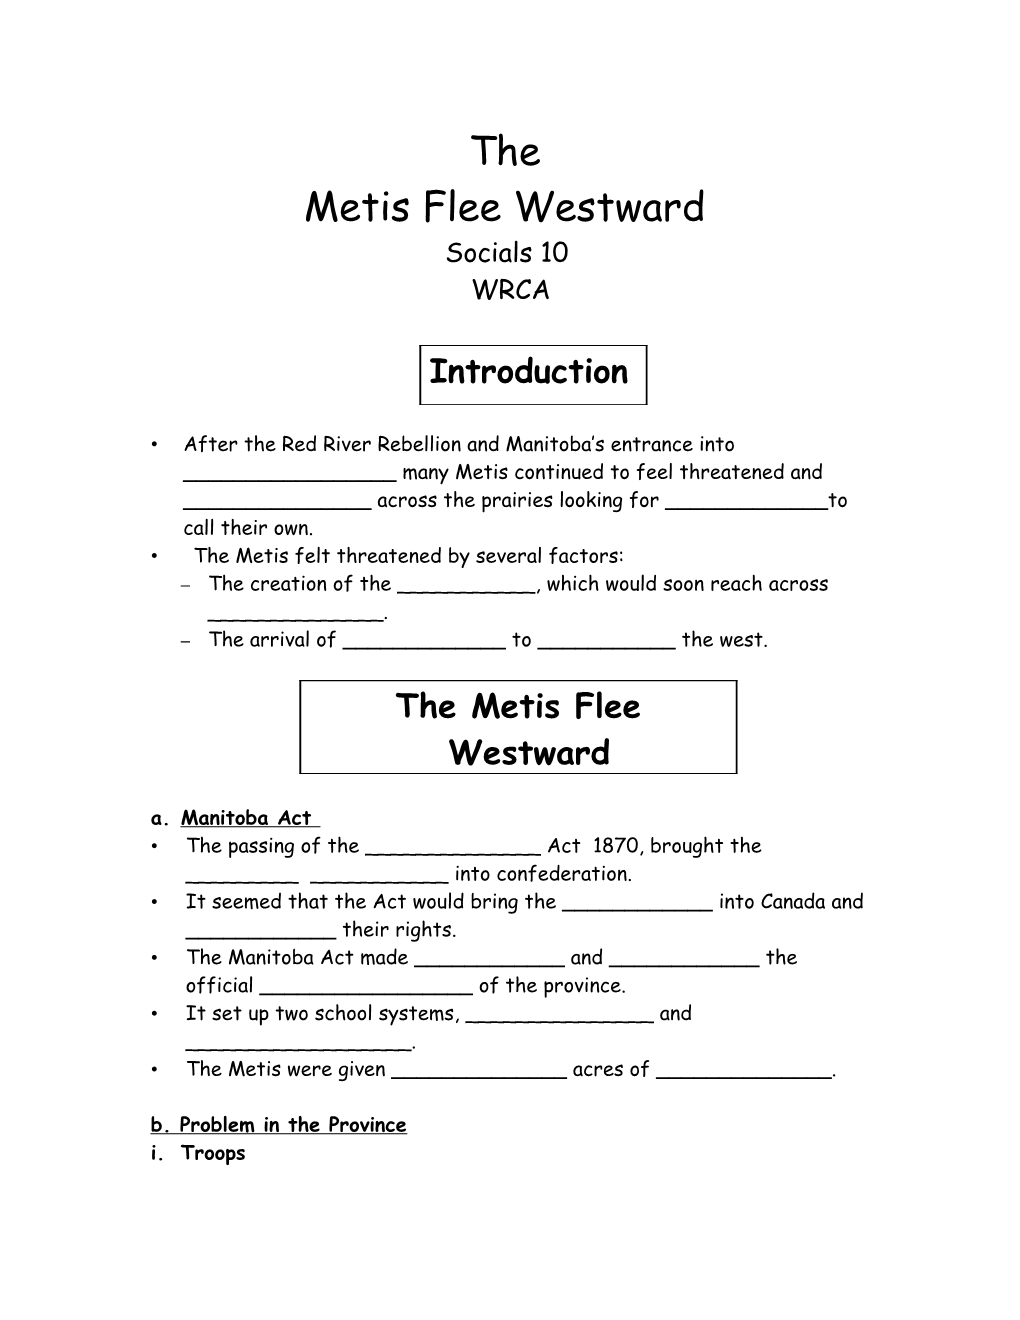 The Metis Flee Westward